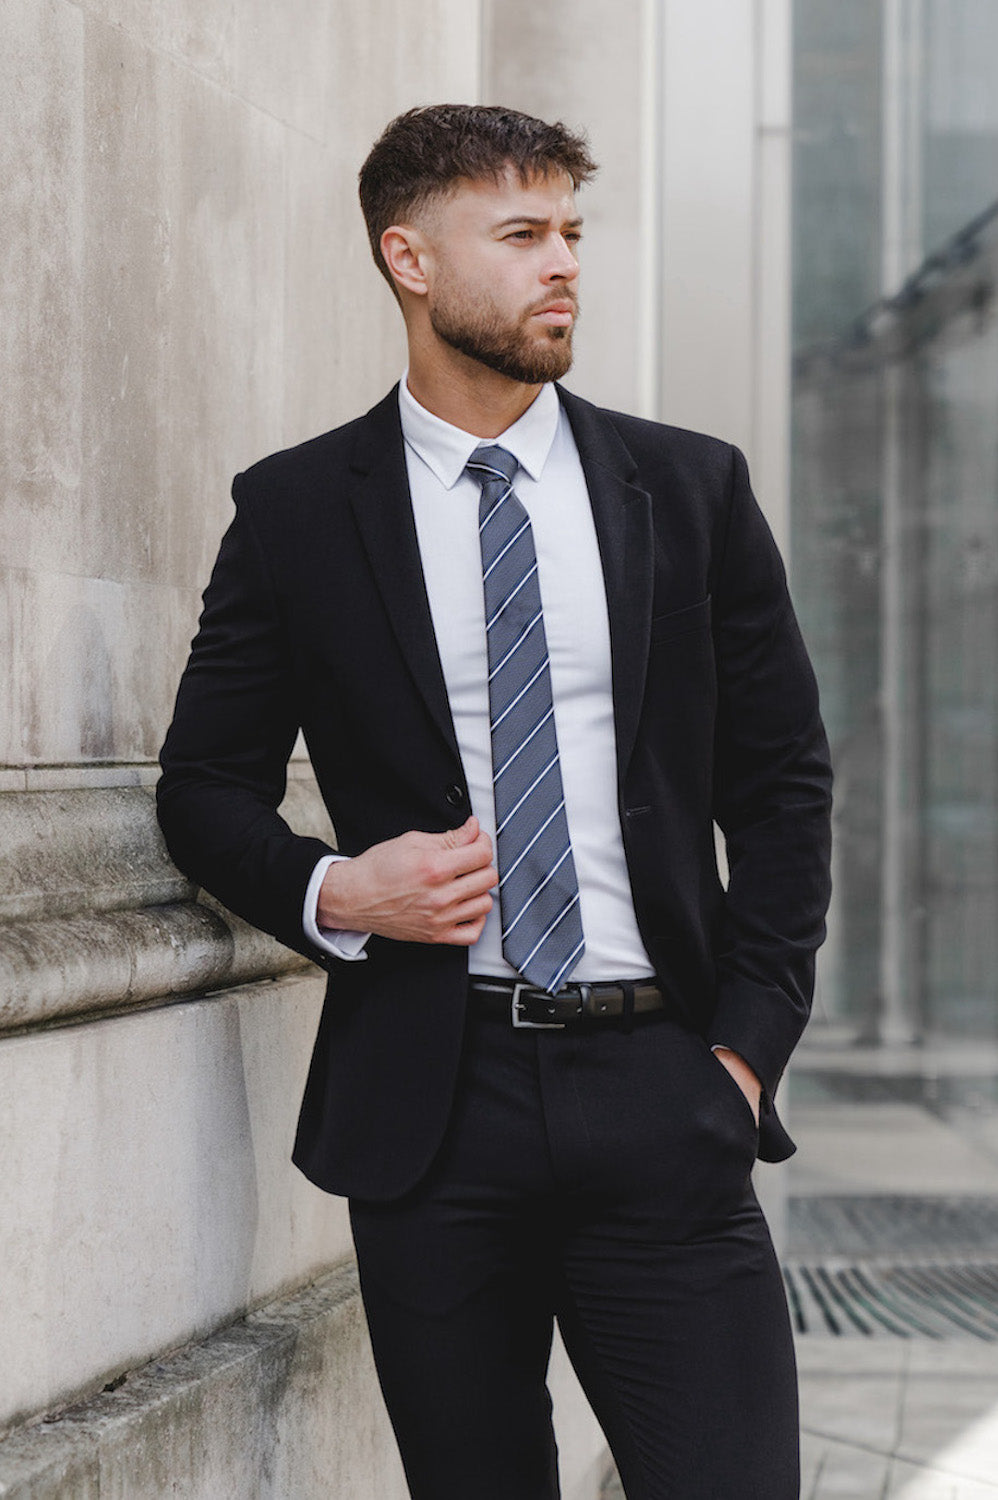 How should a suit coat fit?